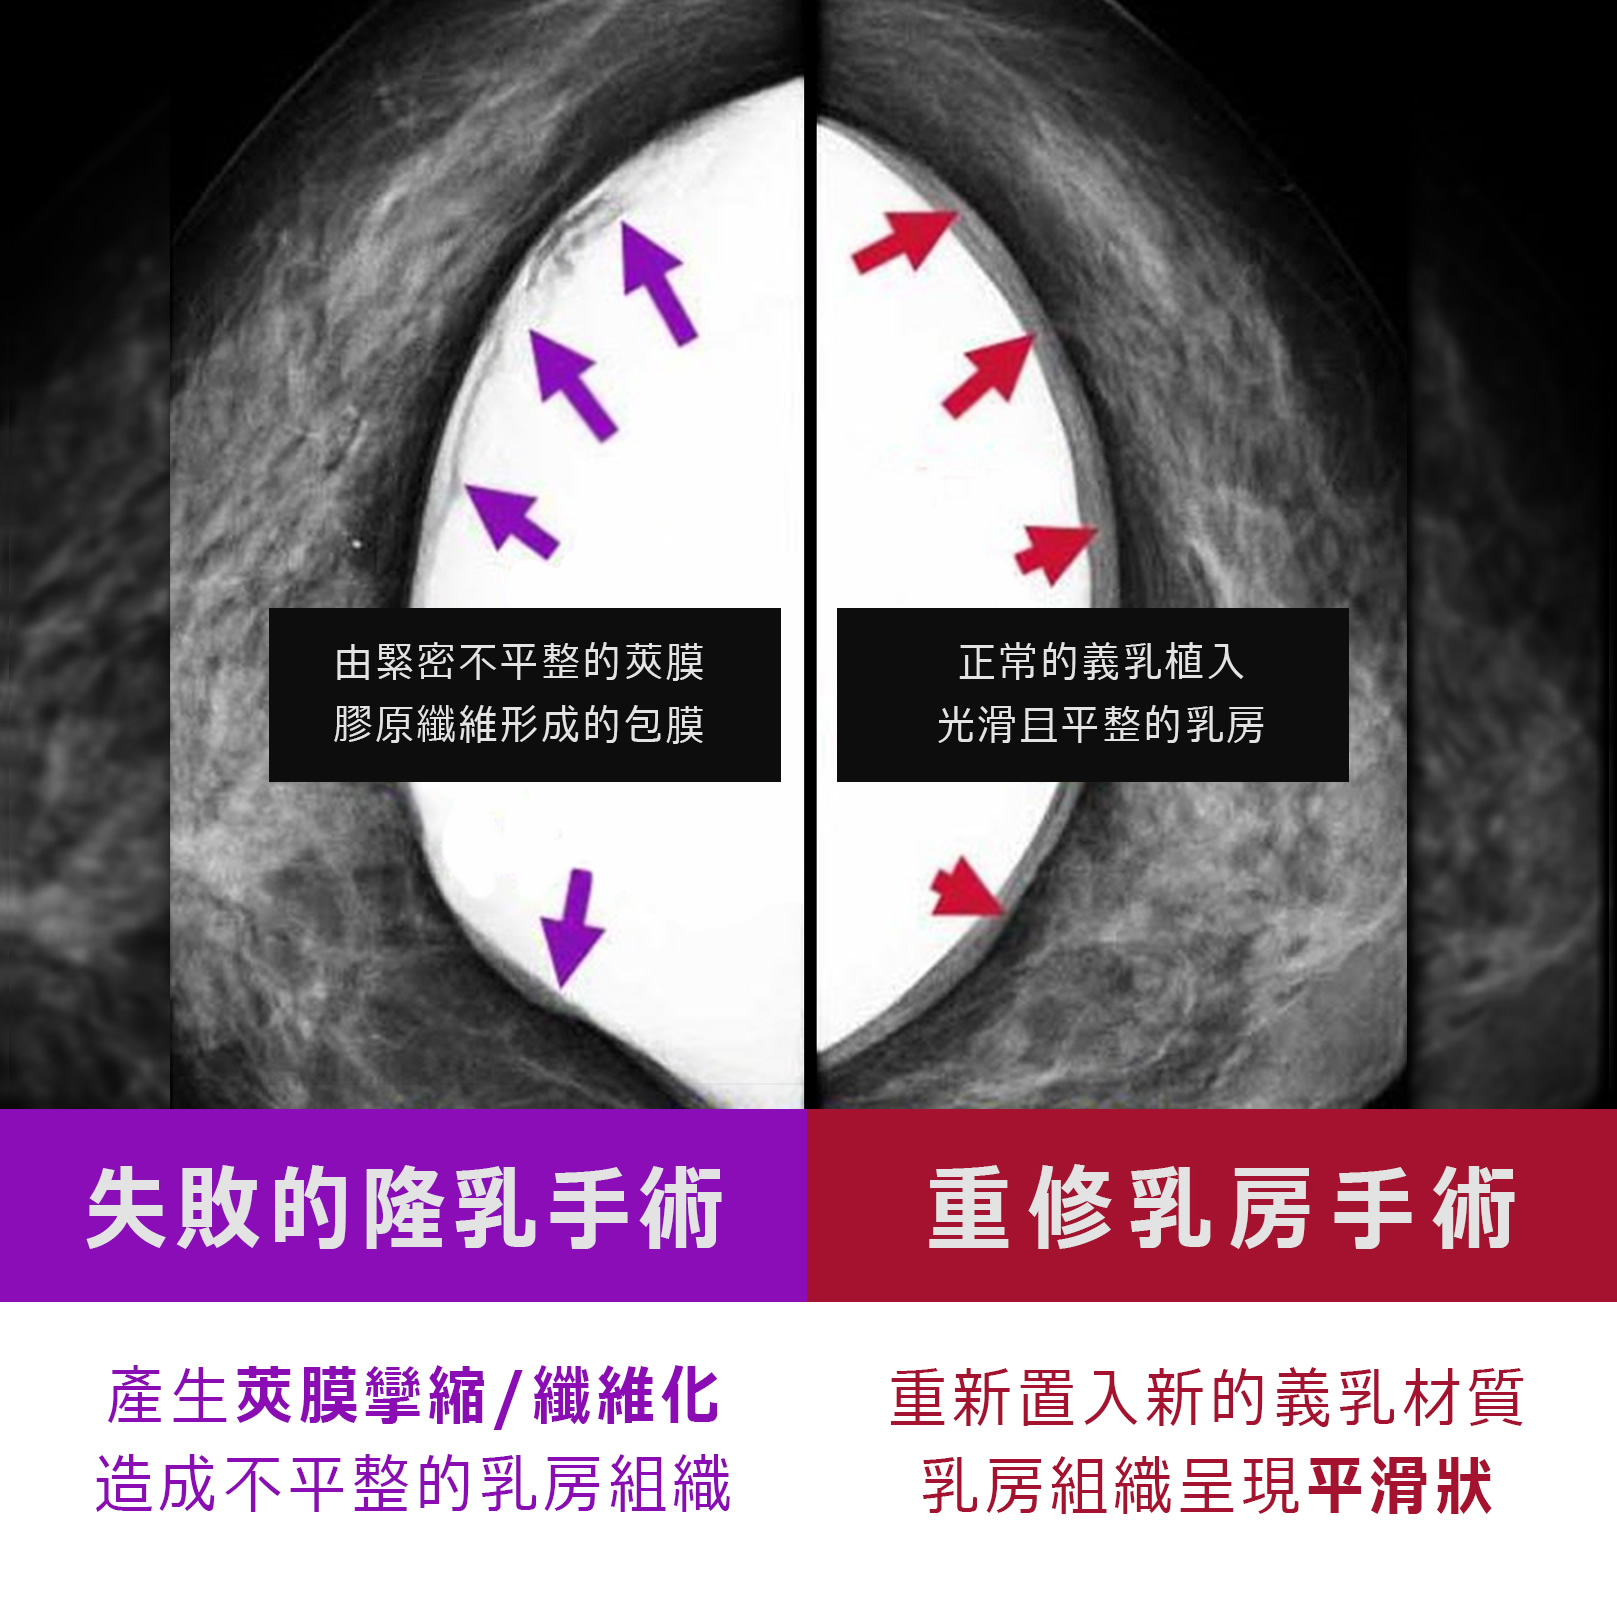 失敗的隆乳手術-產生莢膜攣縮/纖維化，造成不平整的乳房組織。重修乳房手術-重新置入新的義乳材質，乳房組織呈現平滑狀。